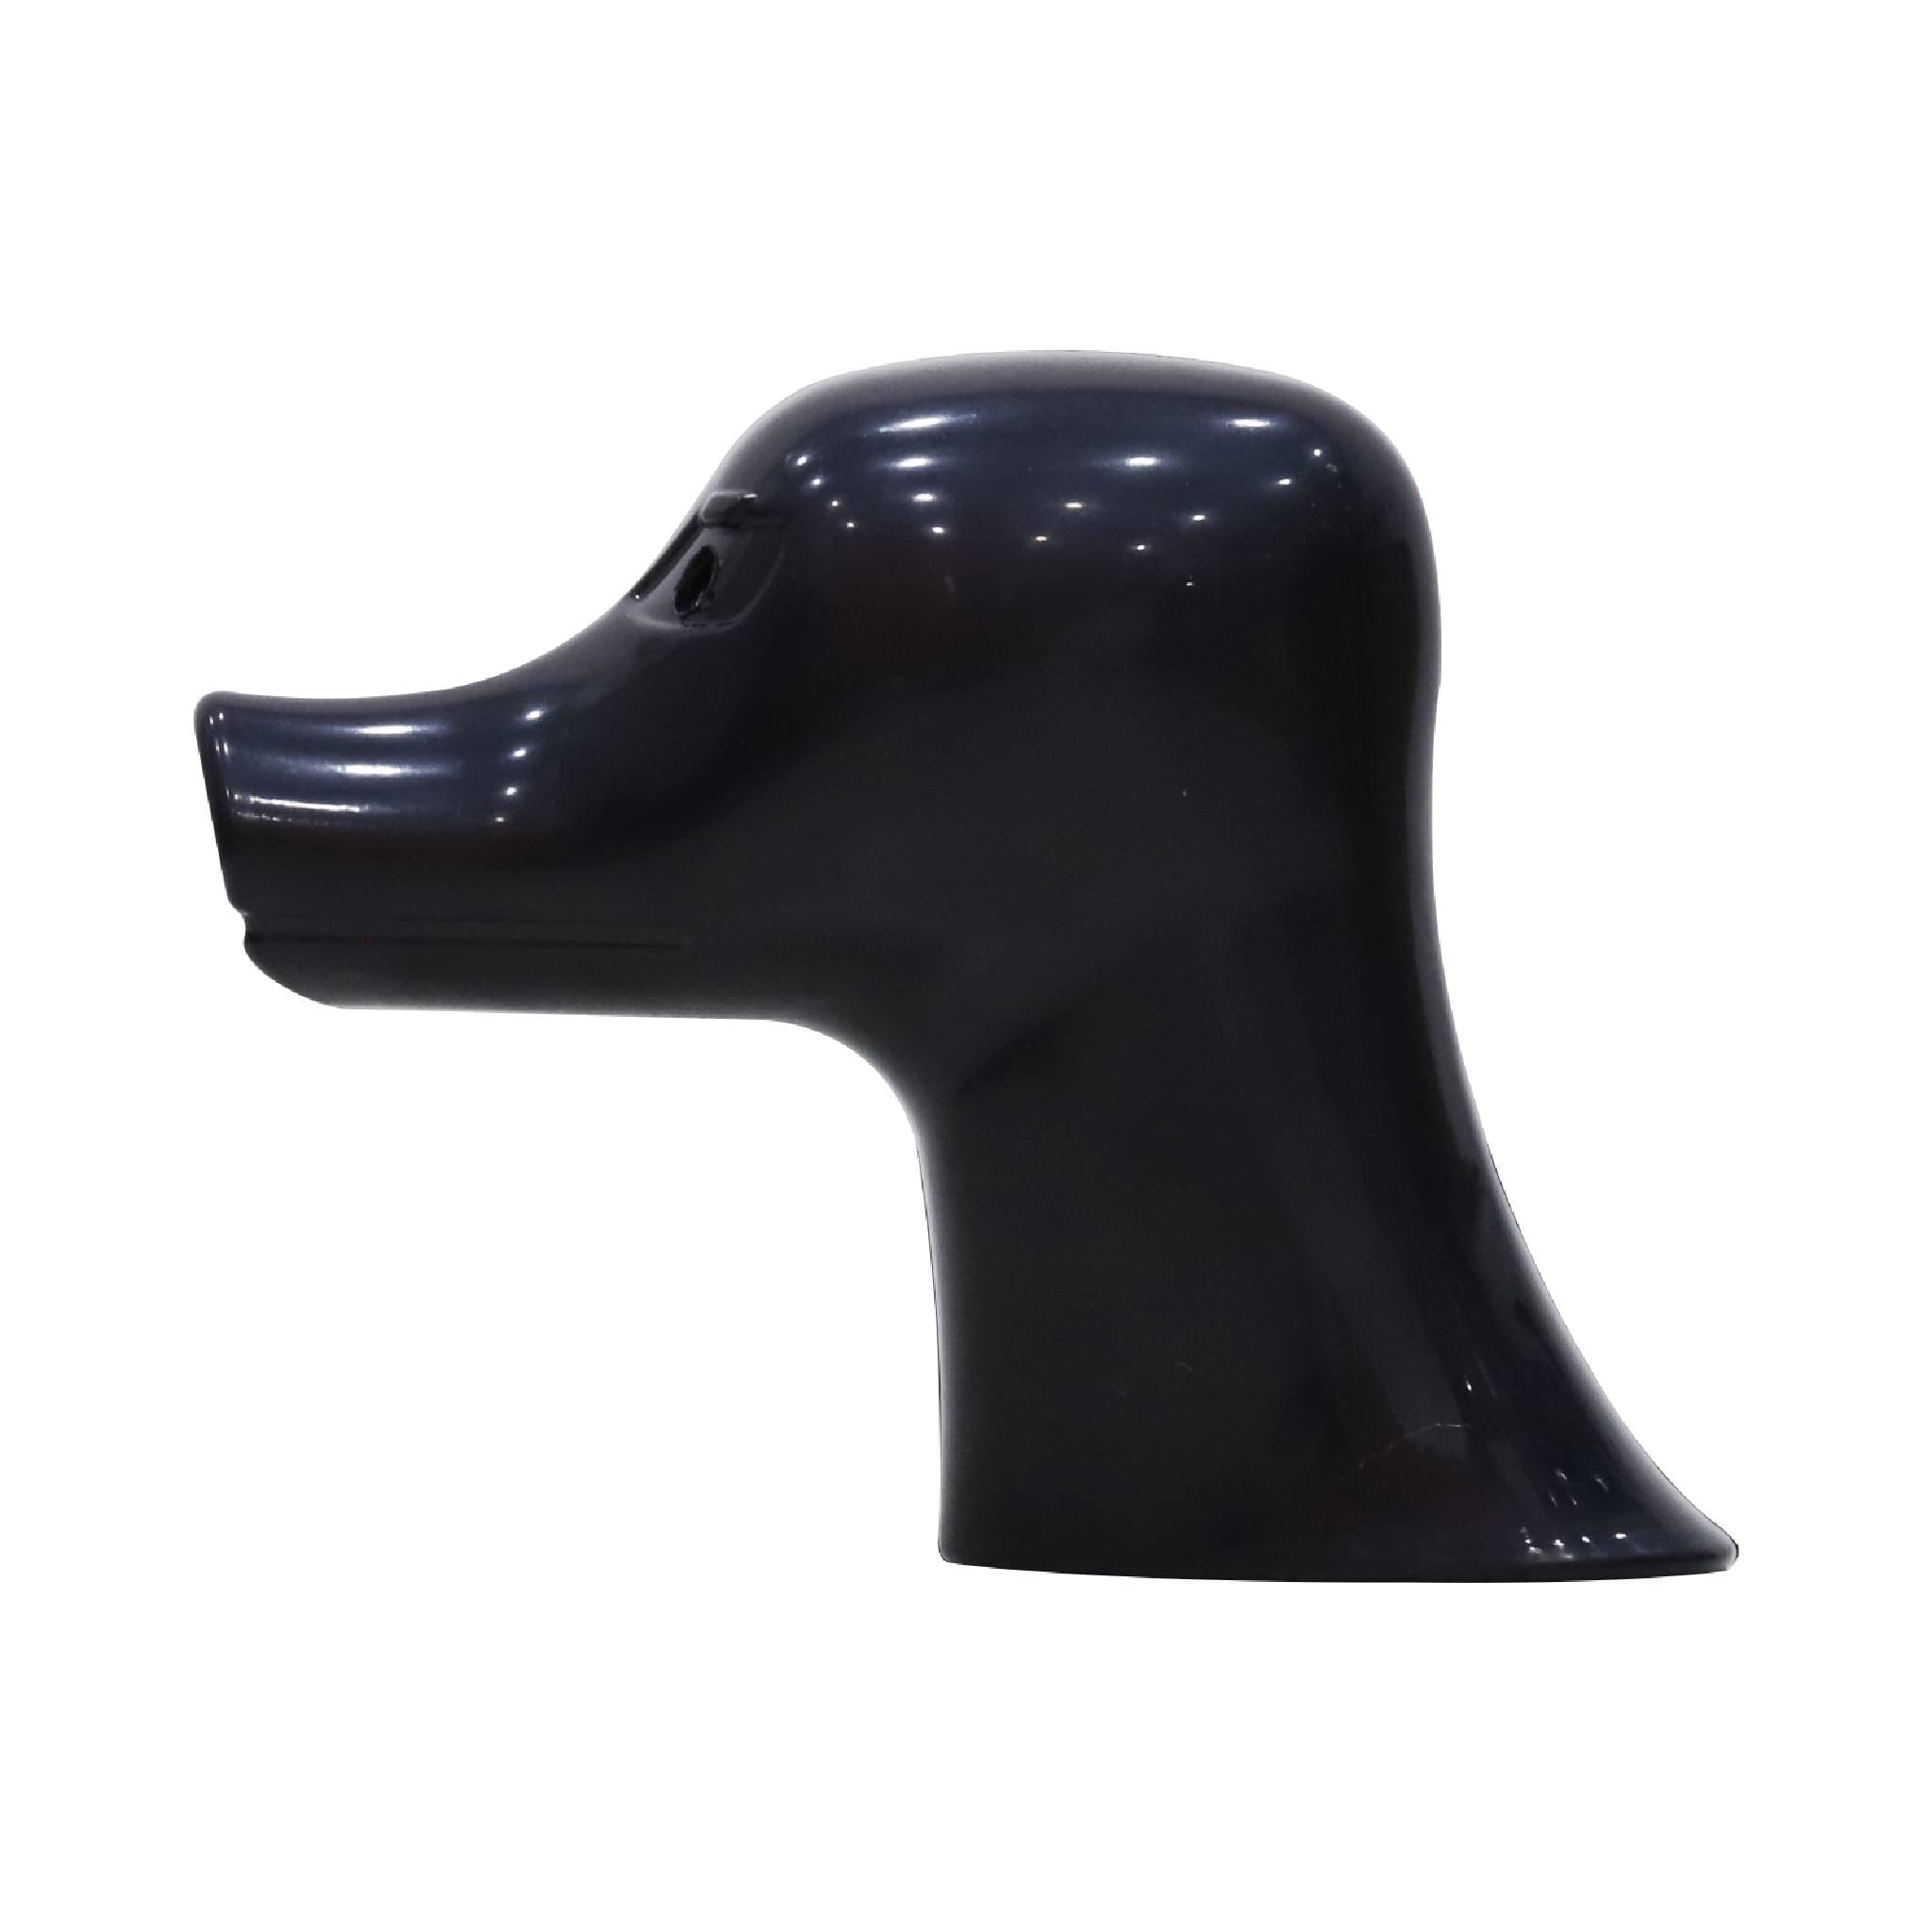 3-in-1 Mannequin Model Dog, Black